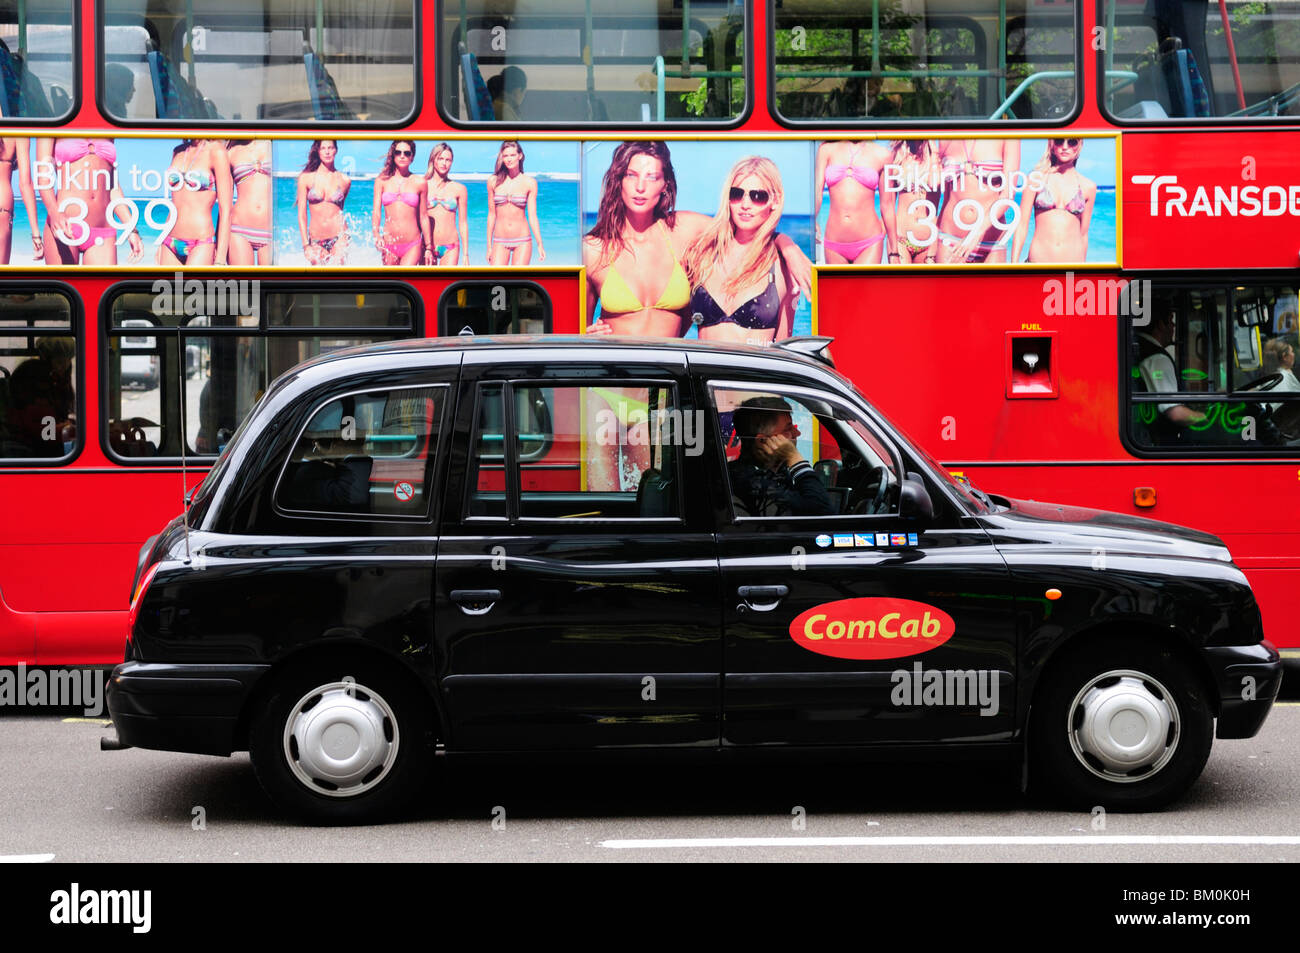 ComCab Londra Taxi e Bus rosso con H&M Bikini annuncio, Oxford Street, London, England, Regno Unito Foto Stock